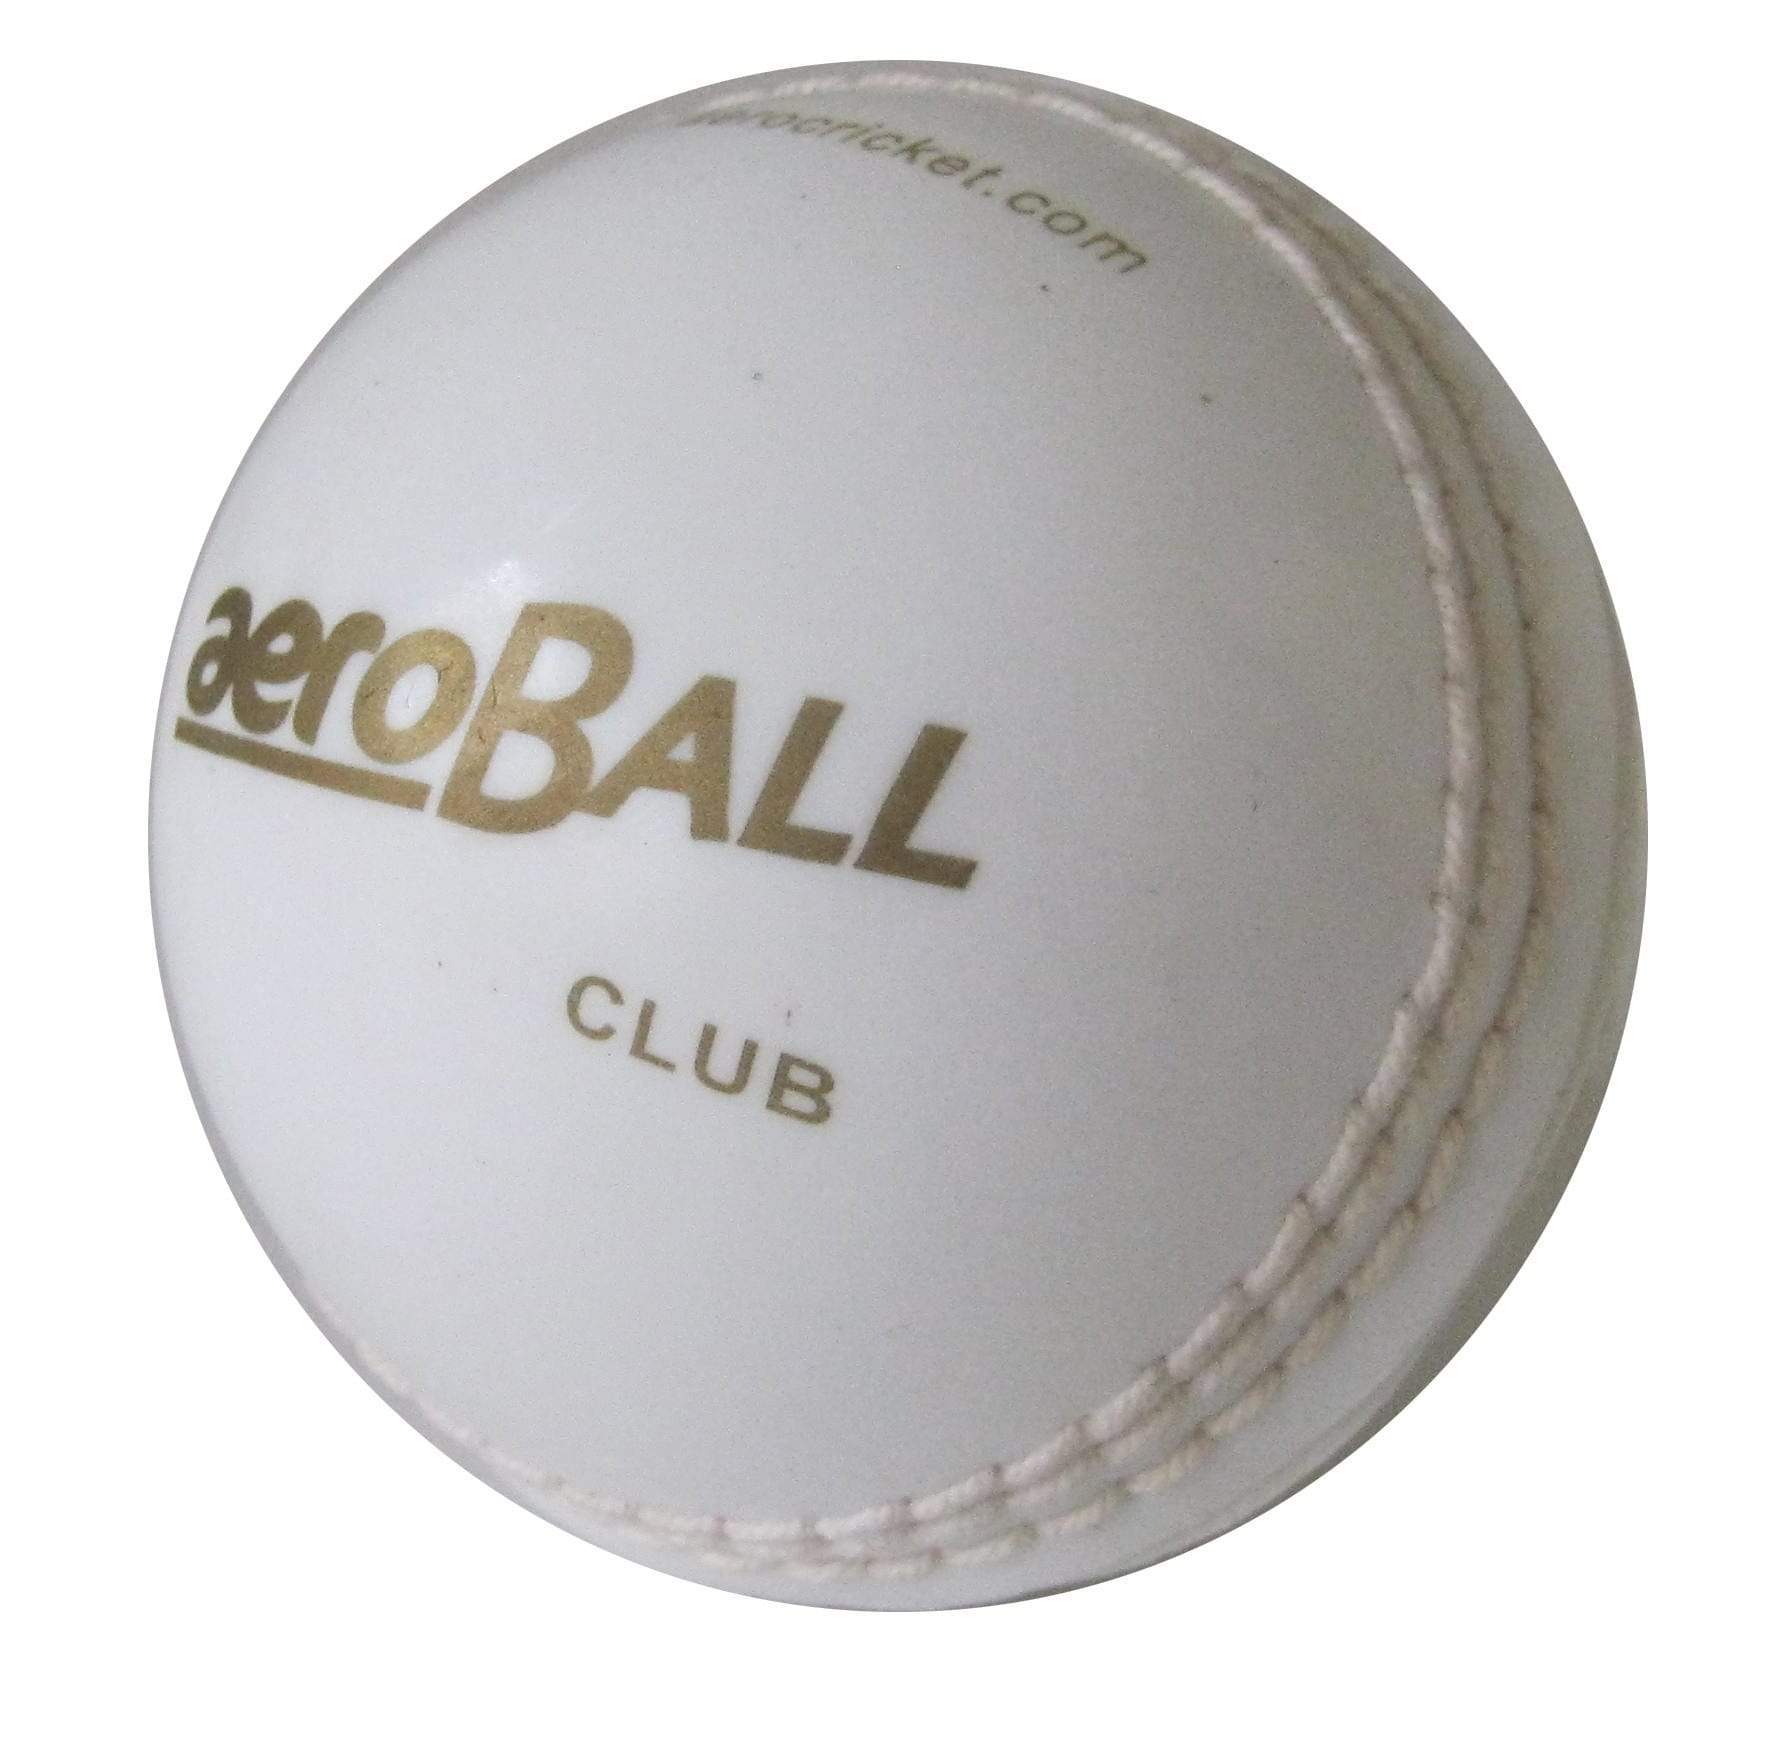 Aero Cricket Balls White Aero Club Safety Ball Senior